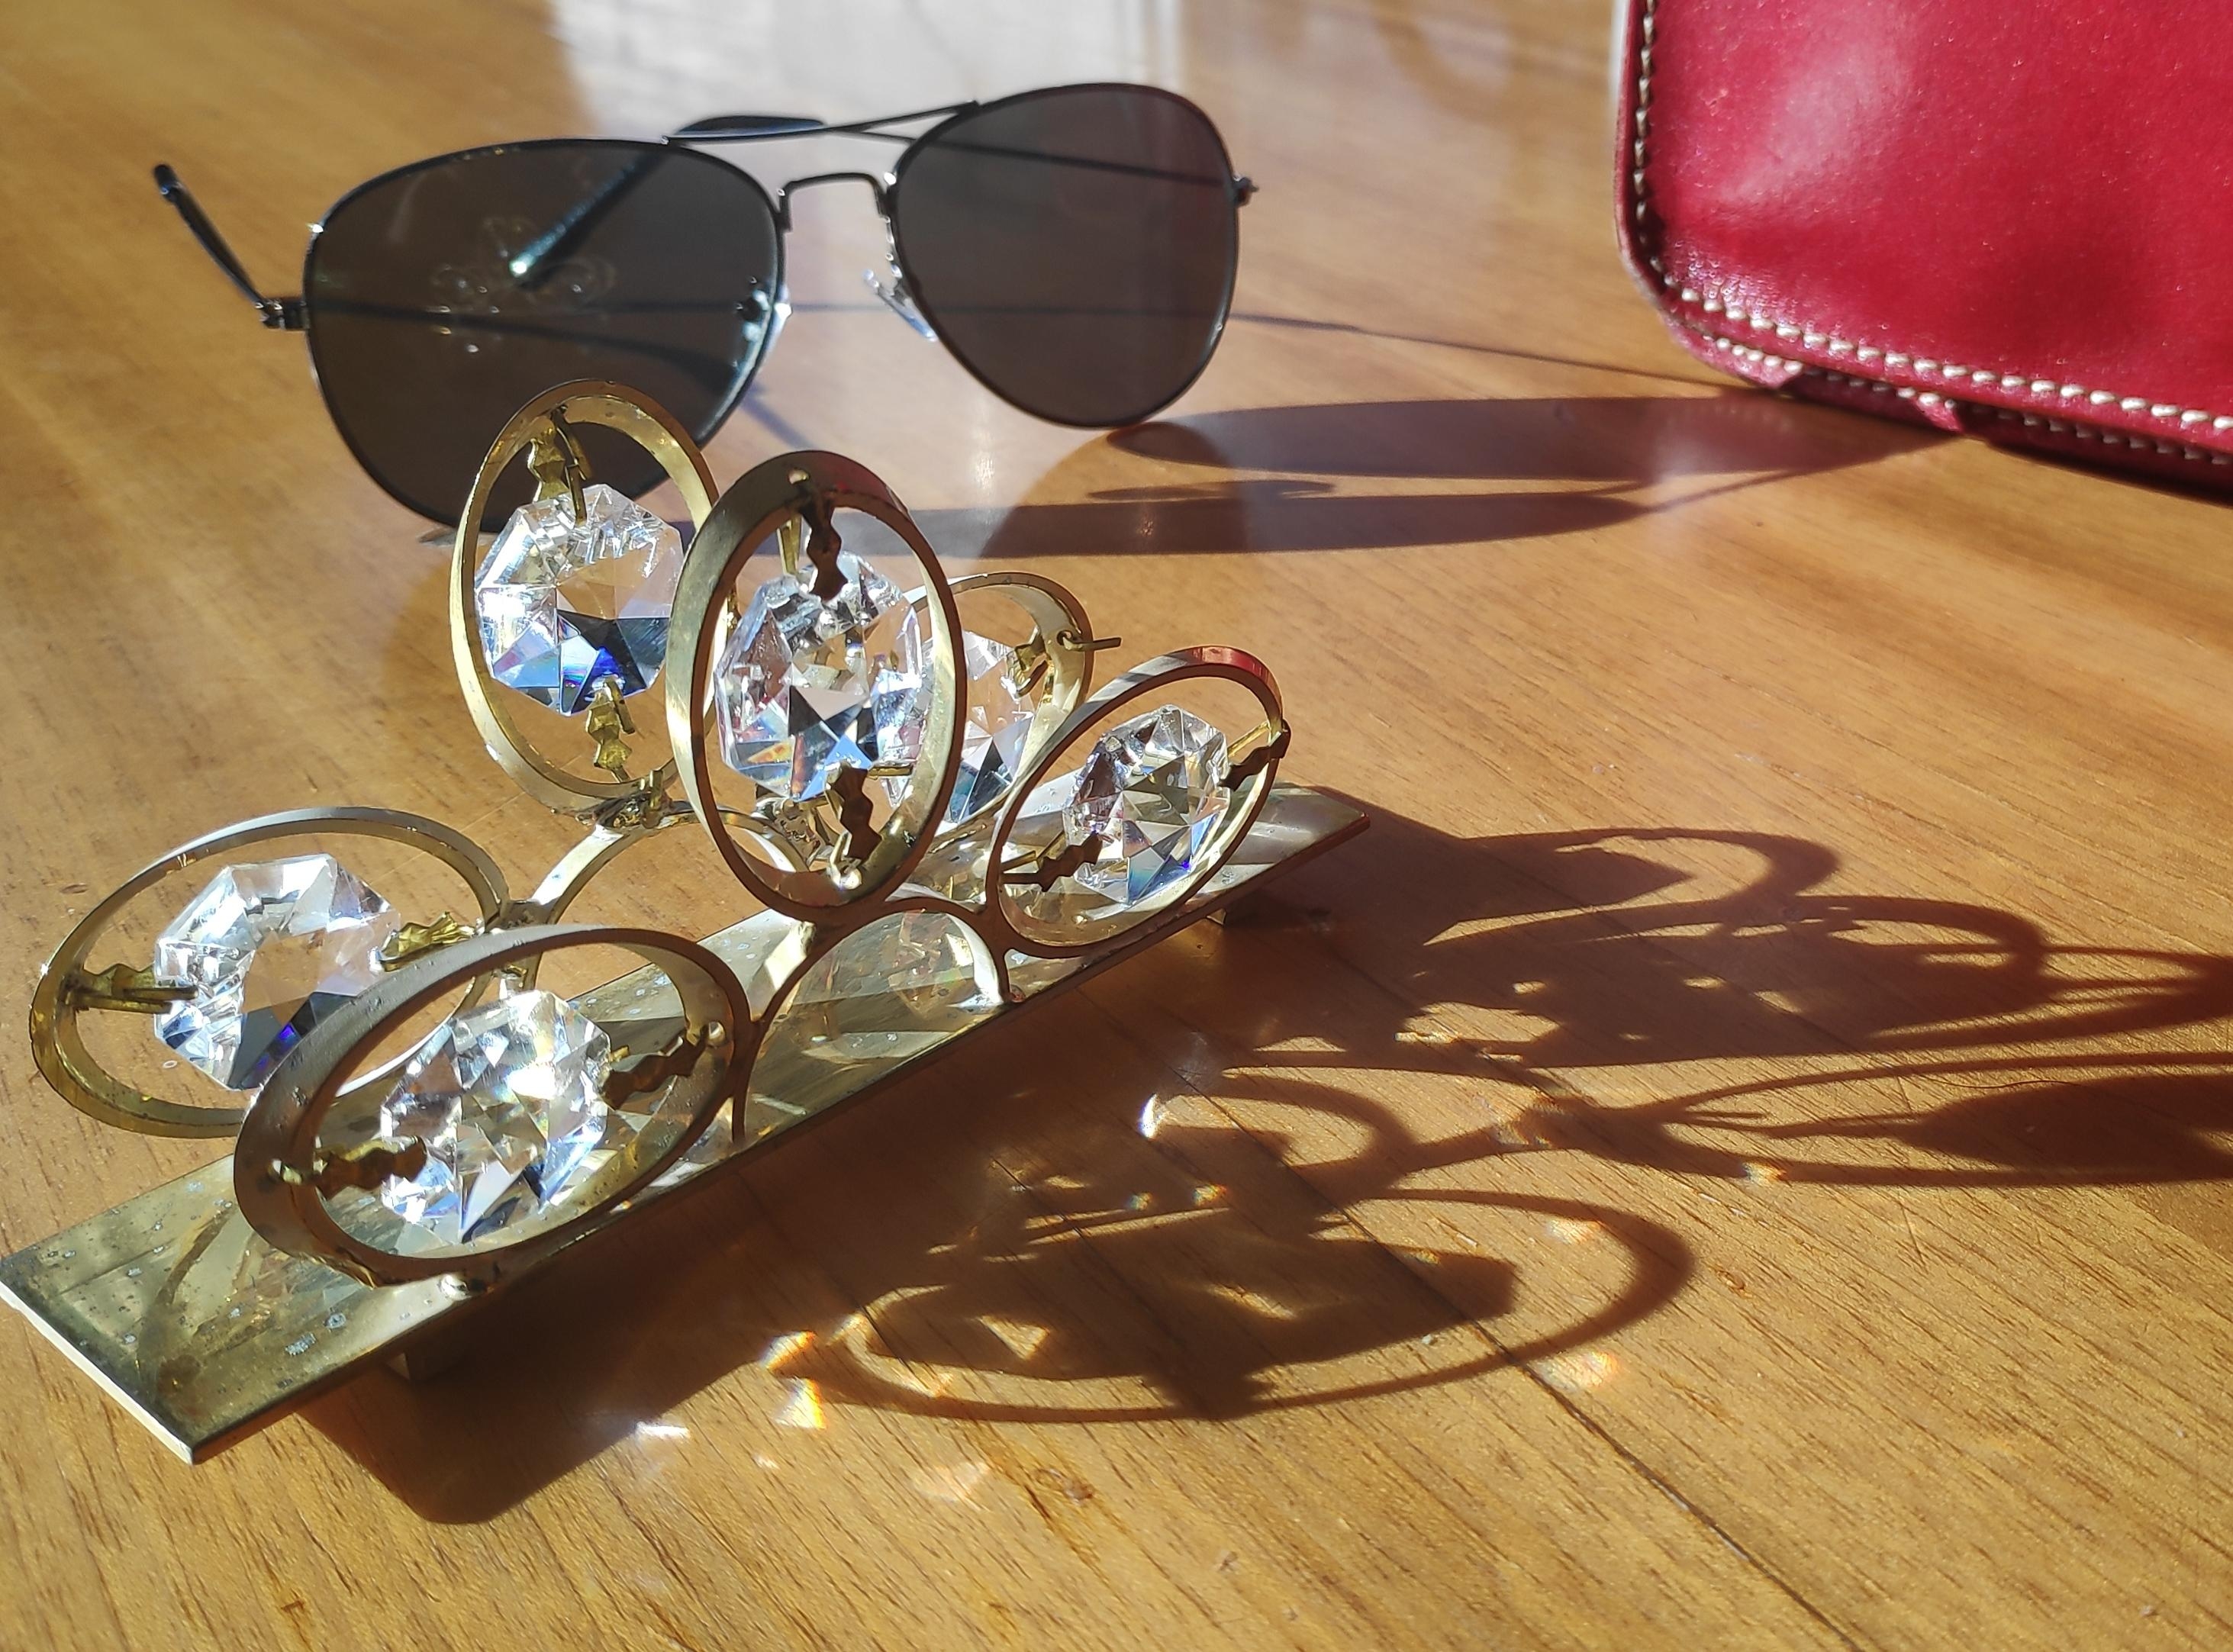 .Kleinigkeiten.
#Sonne #Schatten #Feierabend #Serviettenhalter #Sonnenbrille #Handtasche #vintage #secondhand #Freude